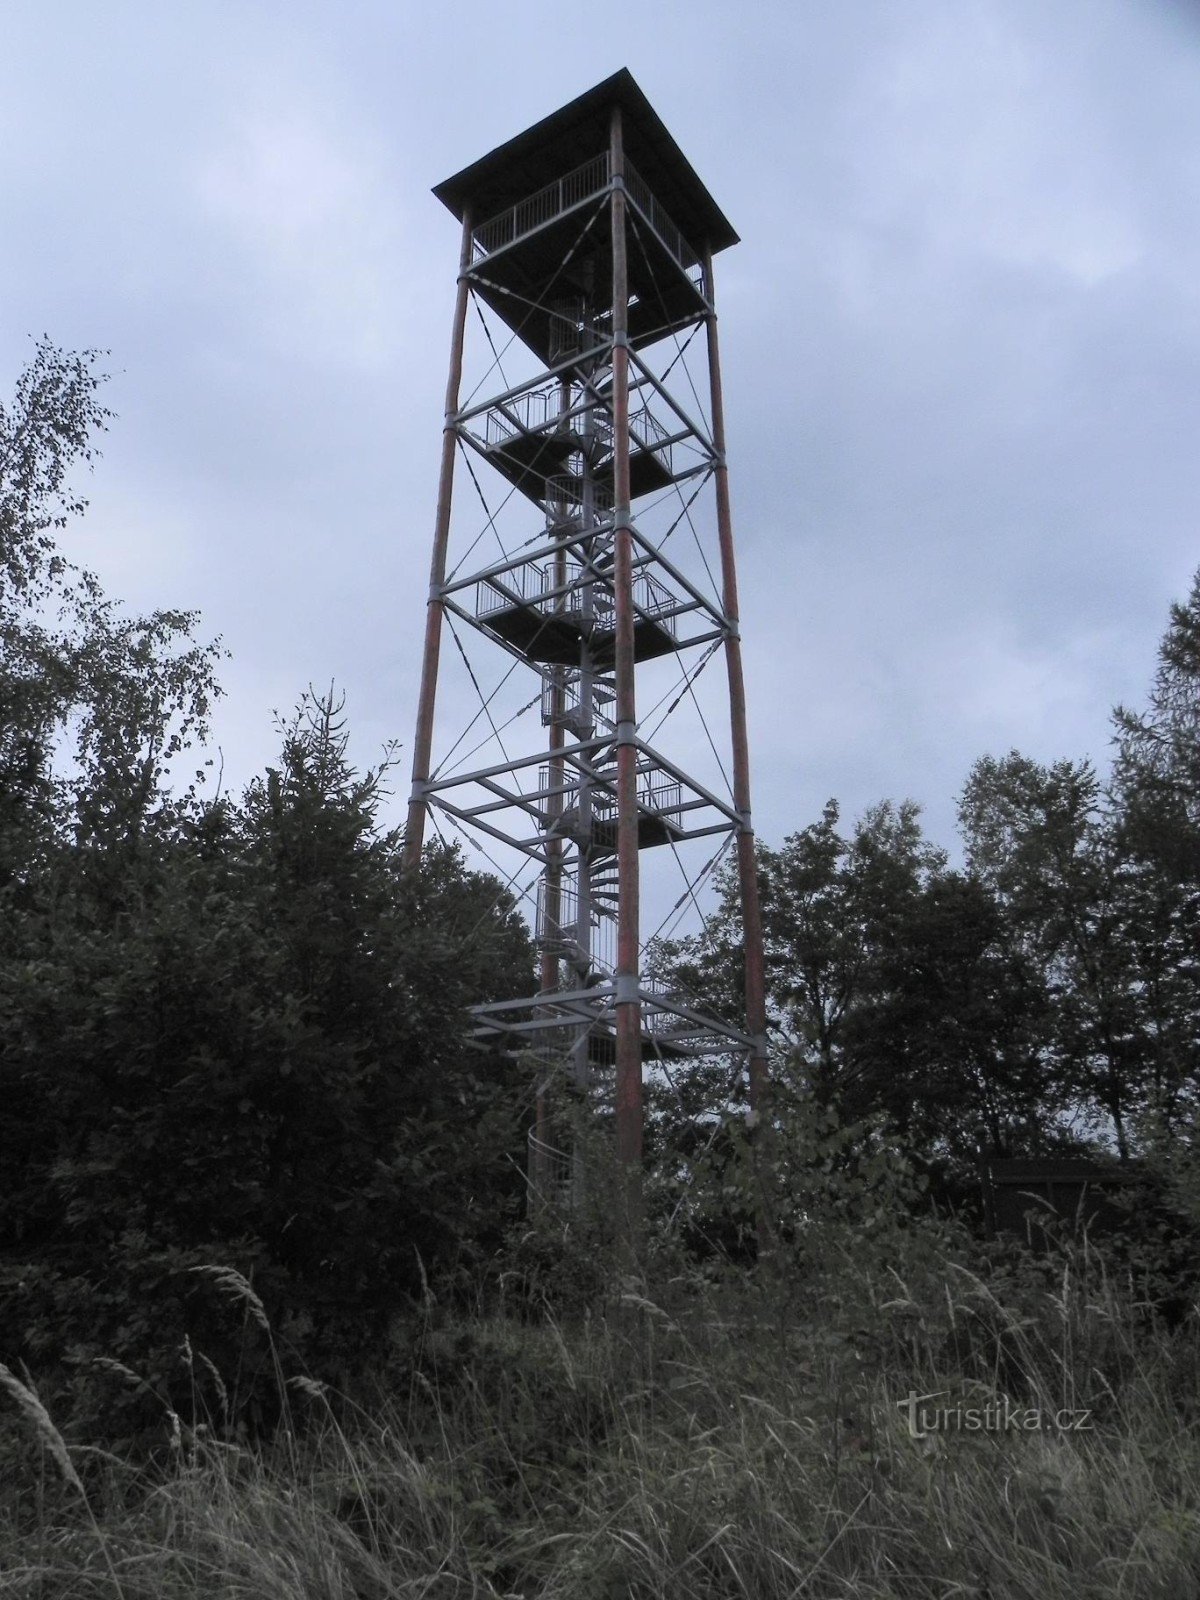 Tháp quan sát Patýřka ở Pastviska